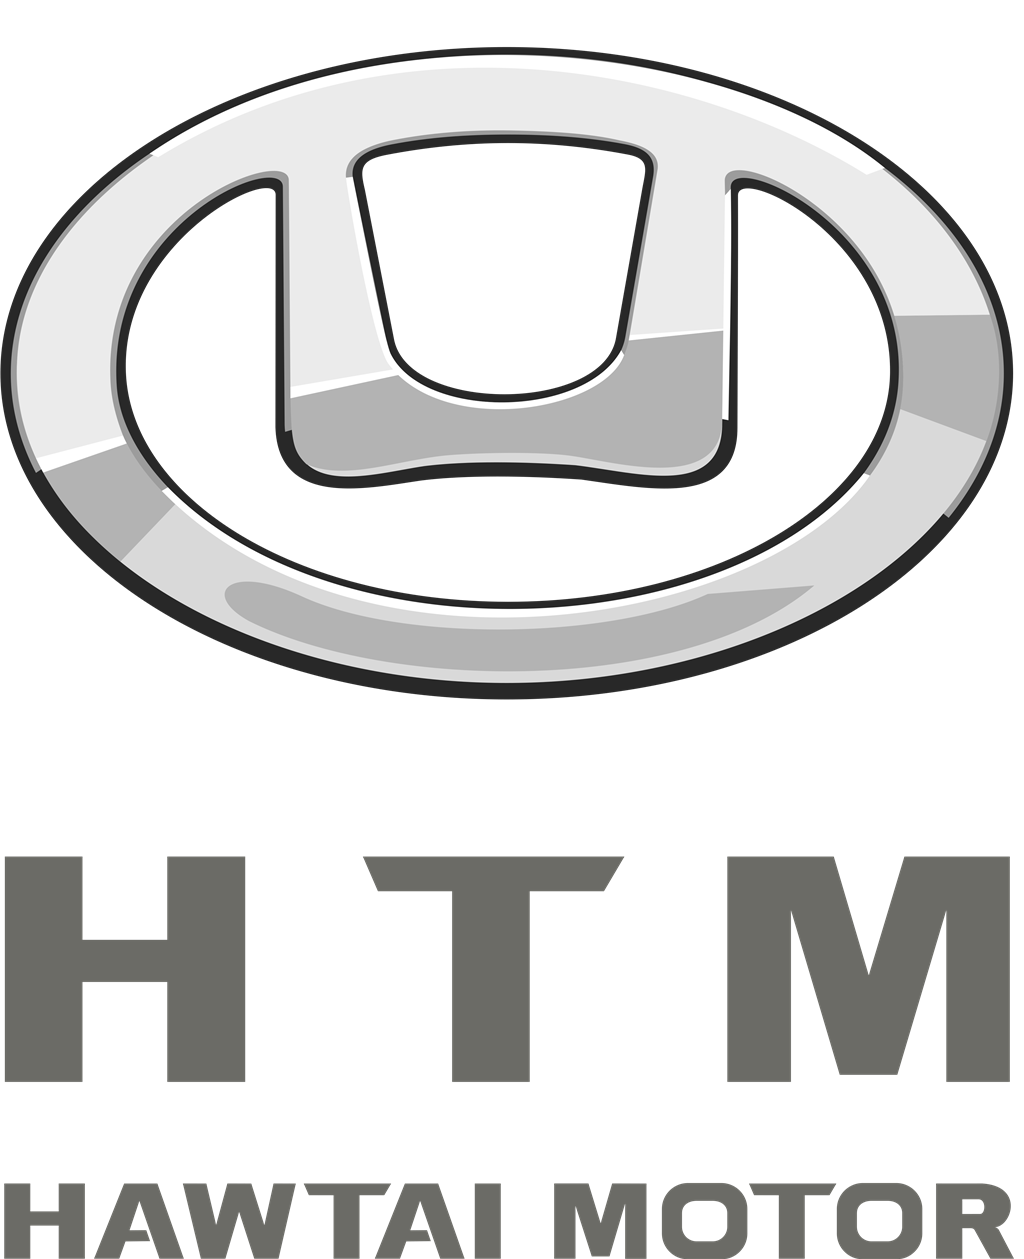 Hawtai Motor Group logotype, transparent .png, medium, large